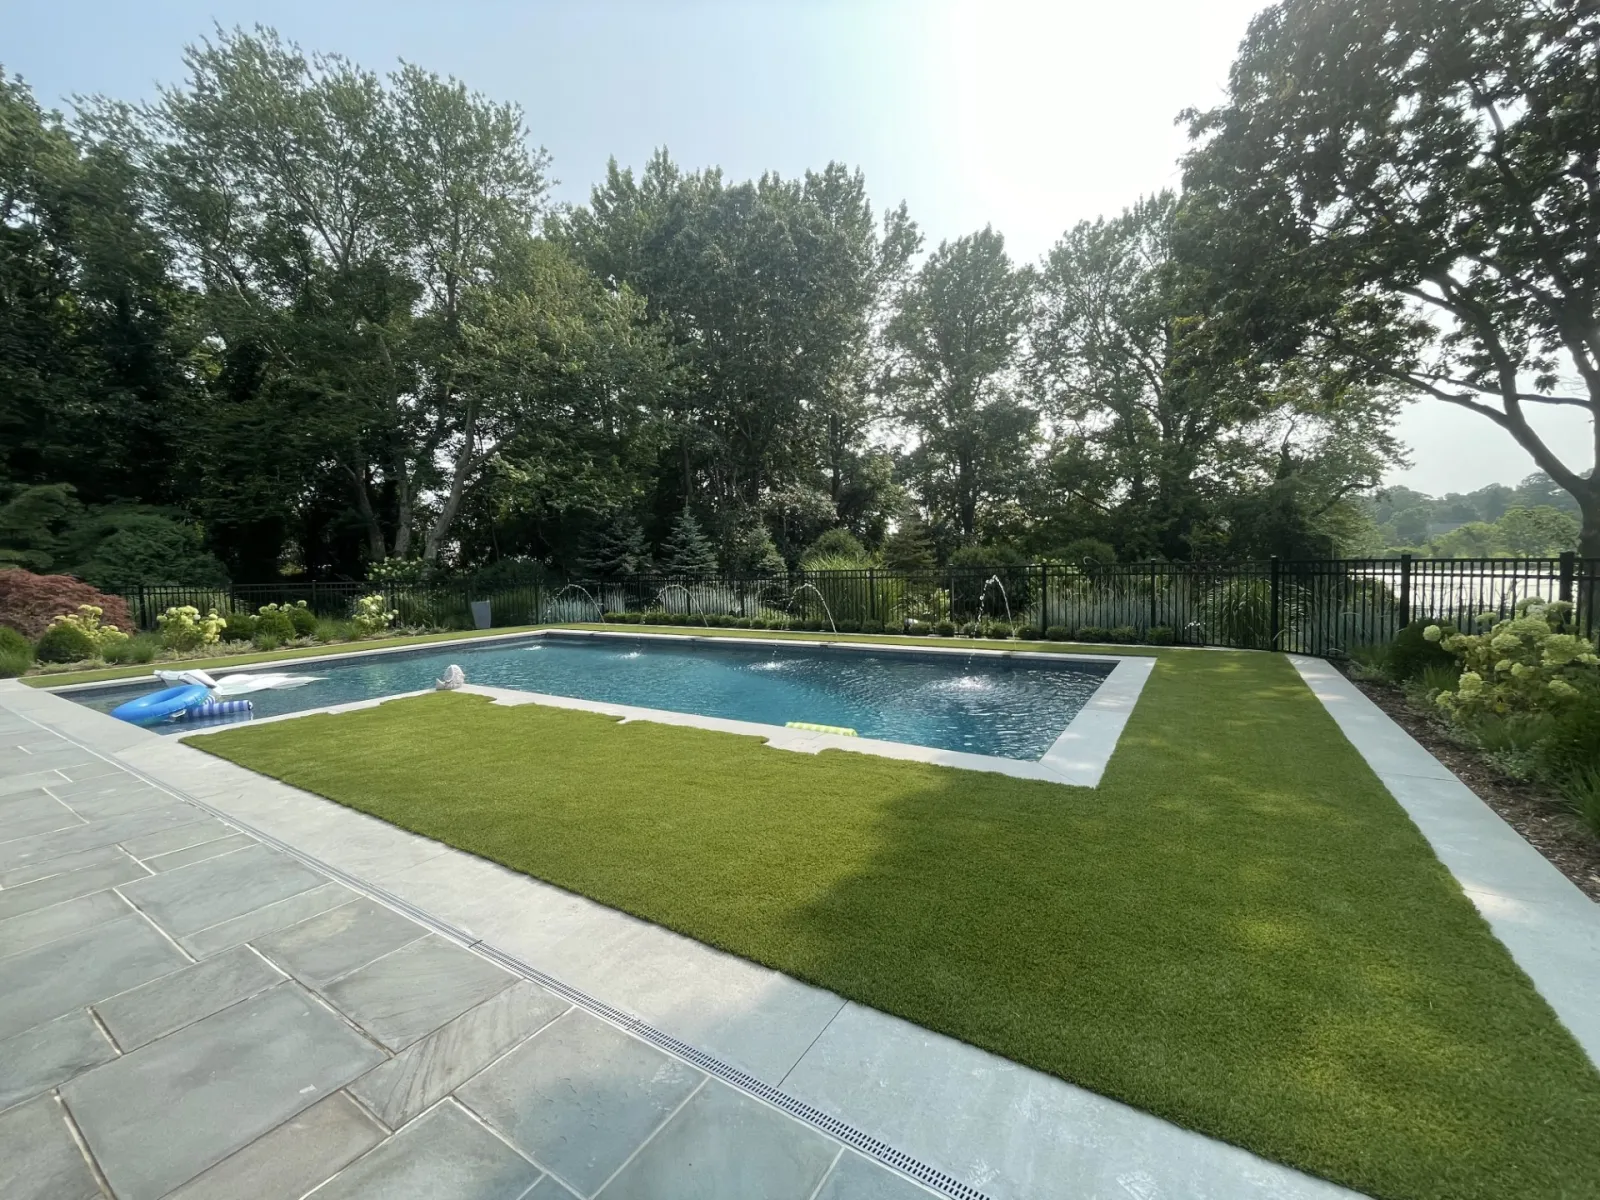 a swimming pool in a backyard